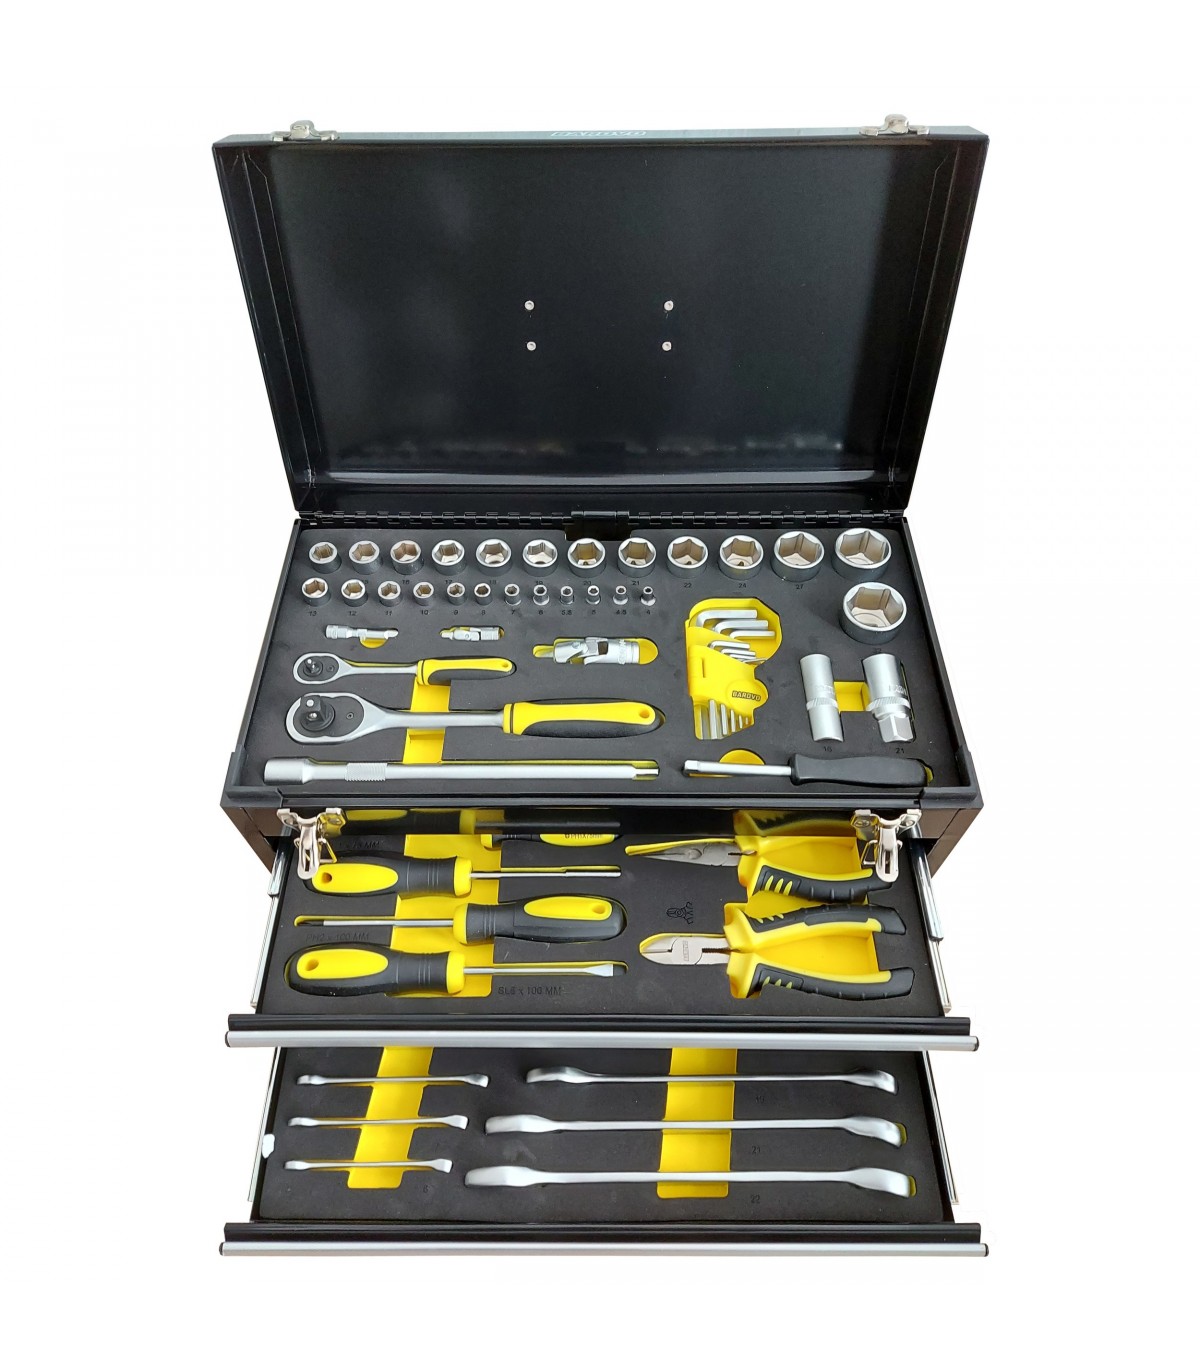 Caja de herramientas metálica de 90 piezas - Barovo JU901412